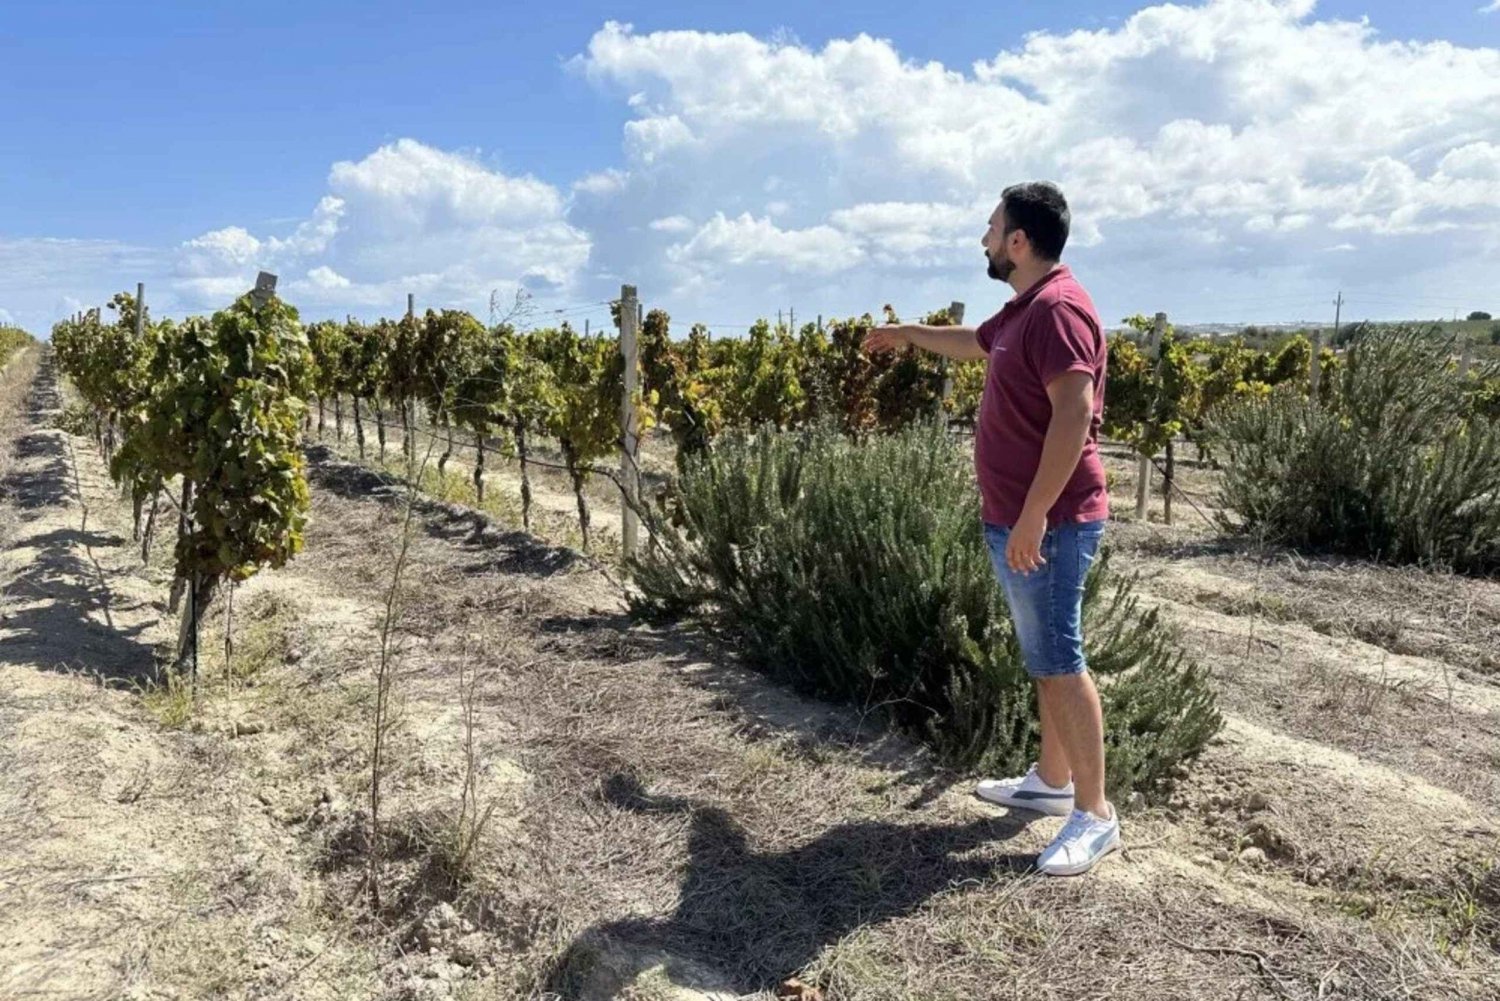 Noto: Vinprovning och rundtur på vingård med lokala produkter